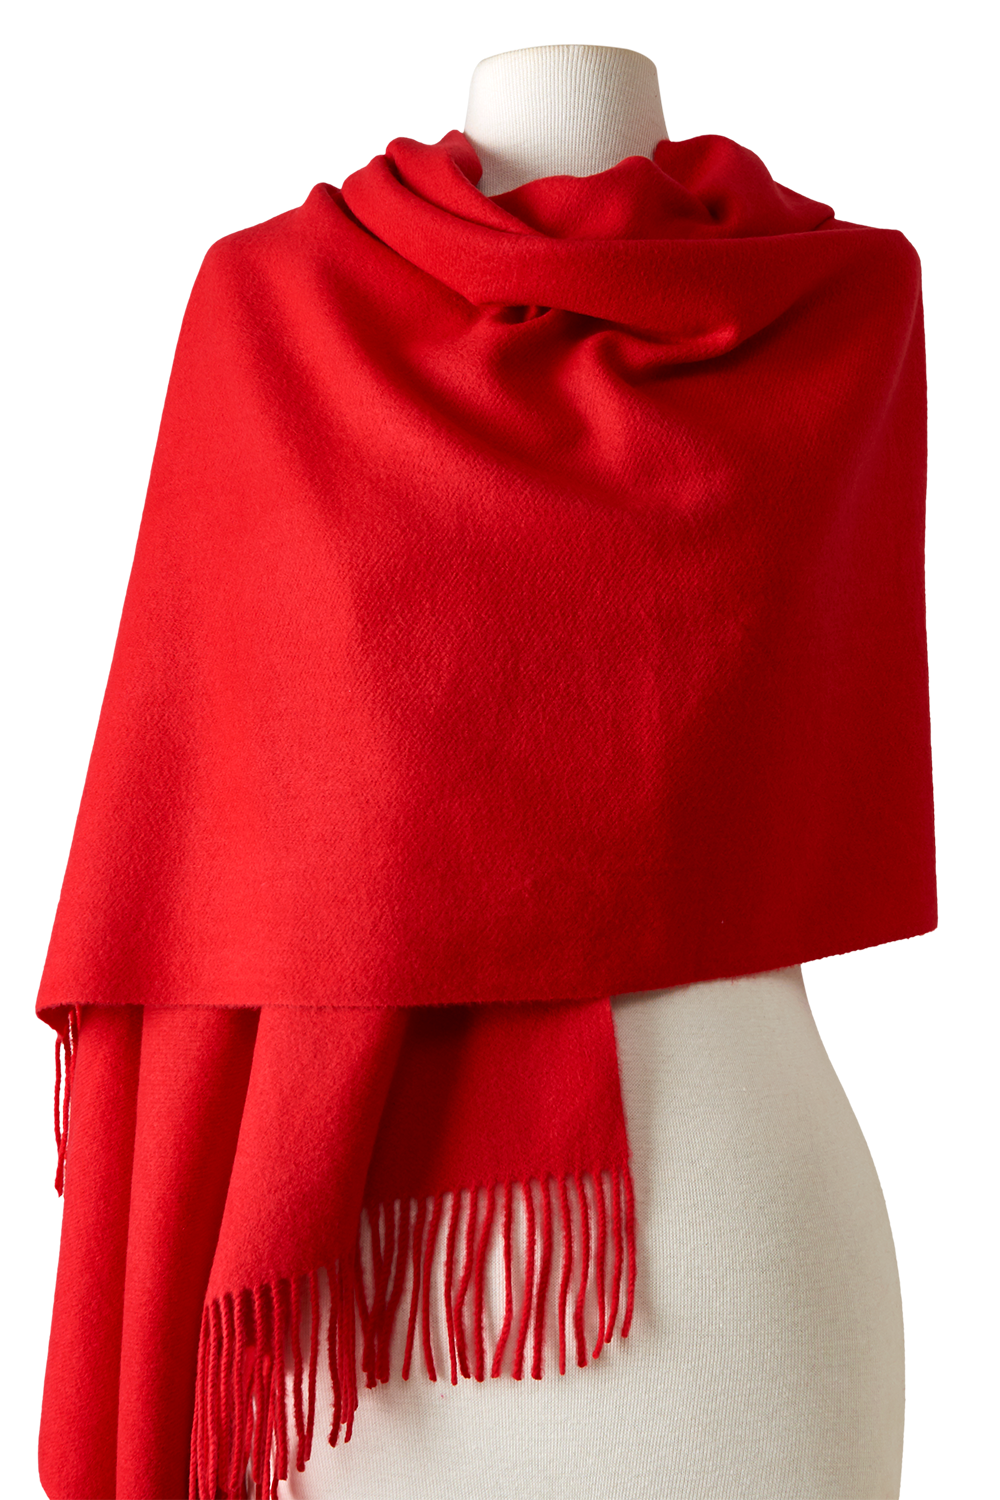 Pashmina Lisa de acrílico vermelho | 68x180cm